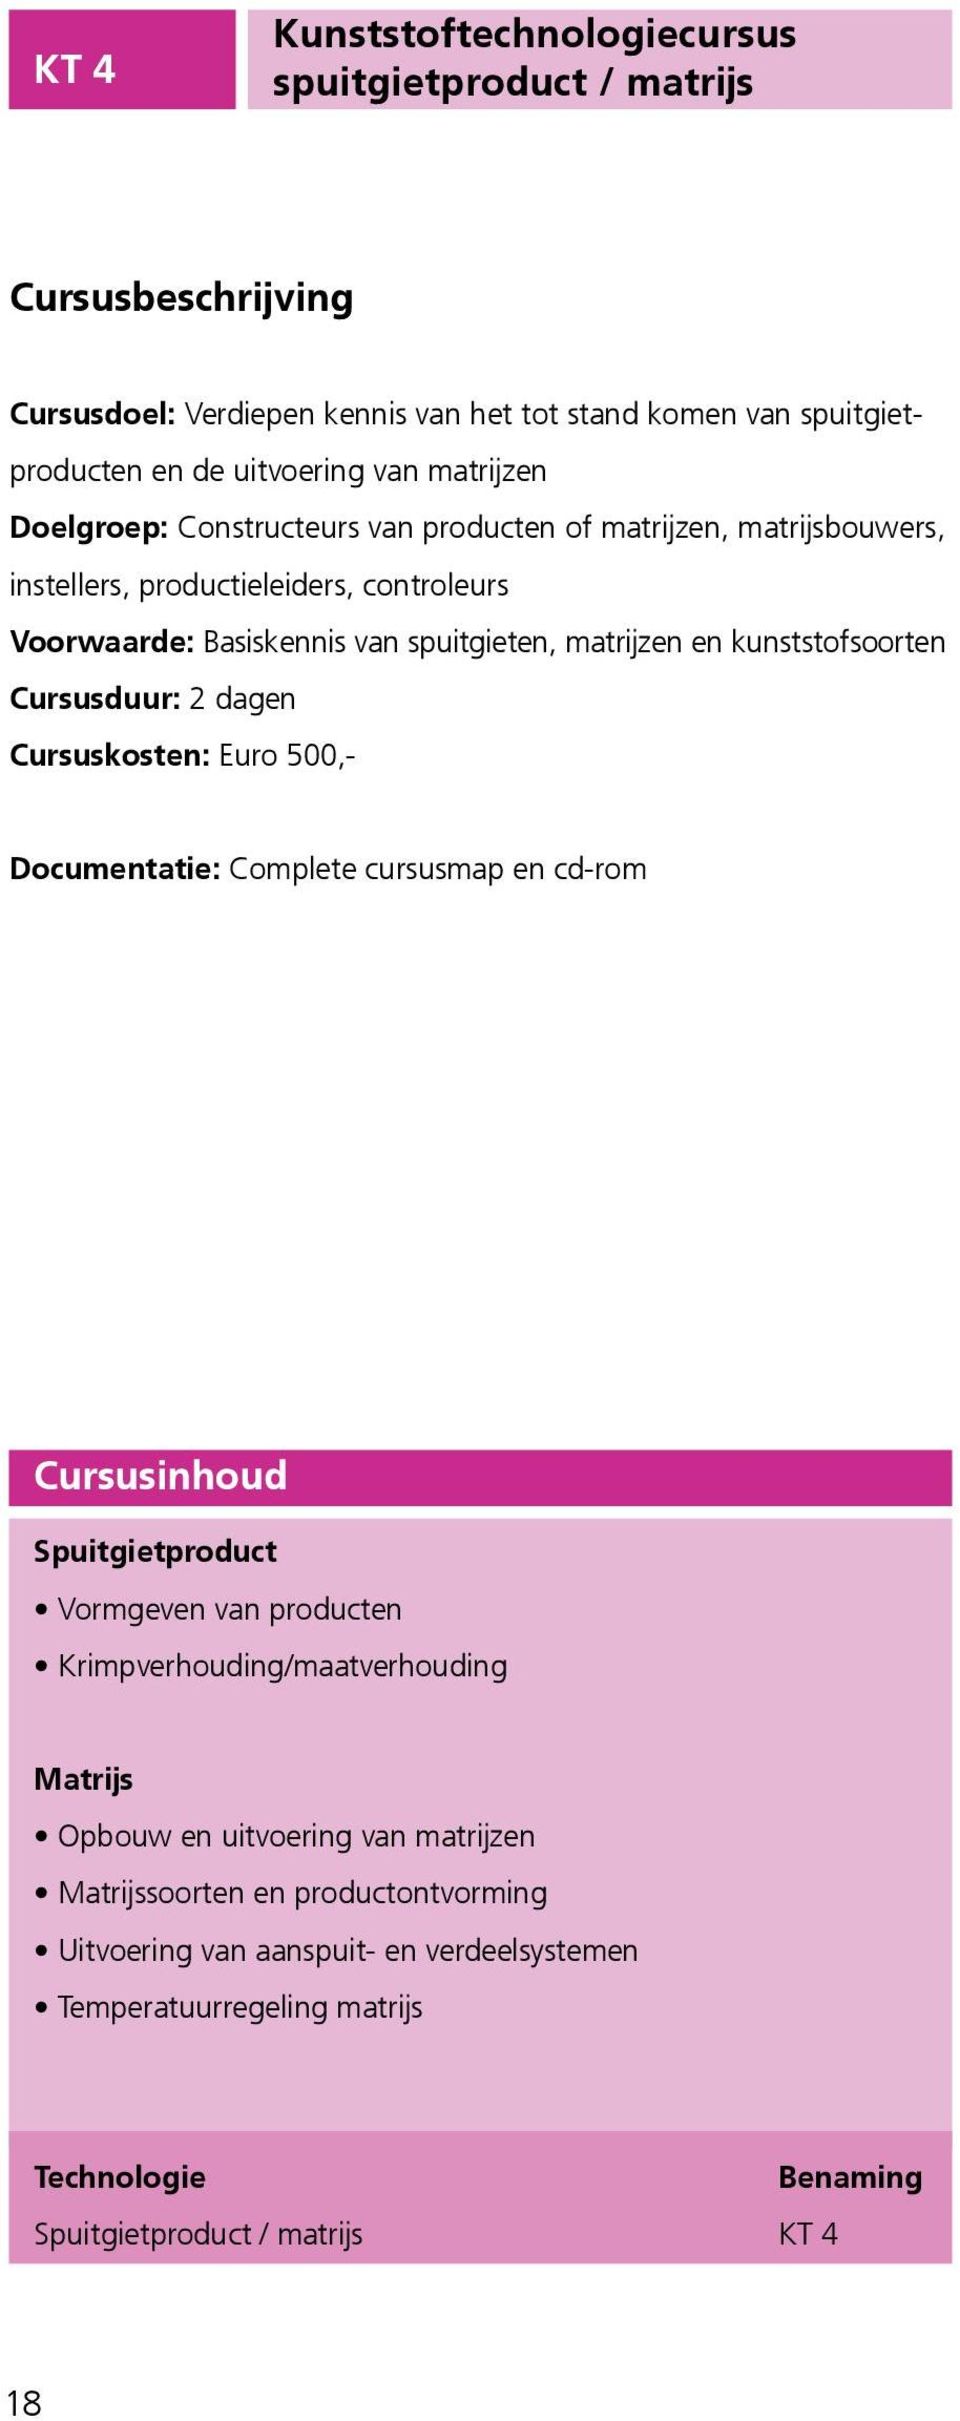 kunststofsoorten Cursusduur: 2 dagen Cursuskosten: Euro 500,- Spuitgietproduct Vormgeven van producten Krimpverhouding/maatverhouding Matrijs Opbouw en uitvoering van